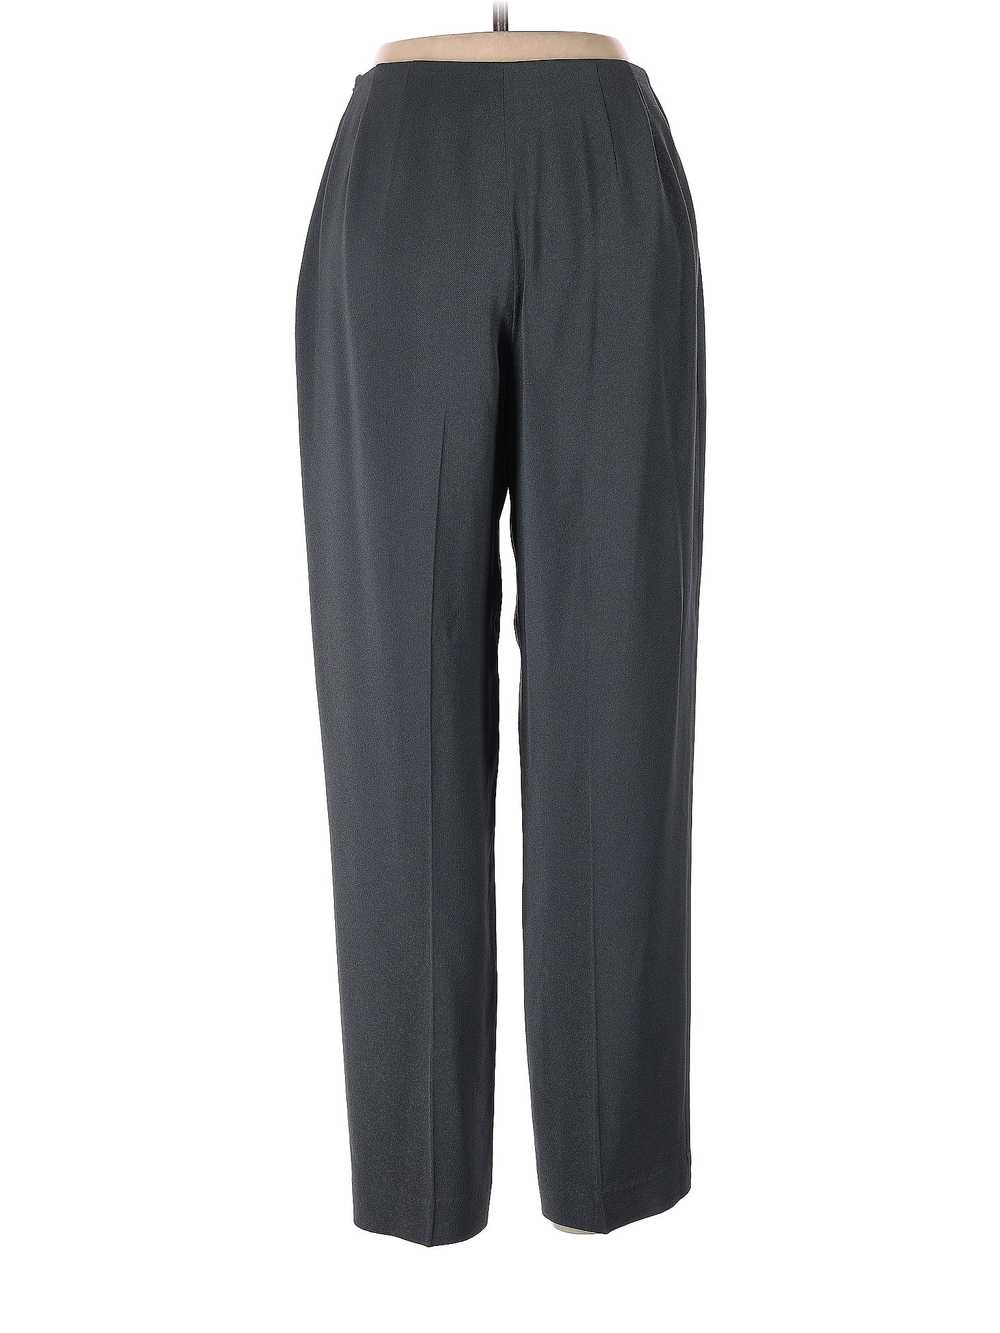 Liz Claiborne Collection Women Gray Dress Pants 6 - image 2